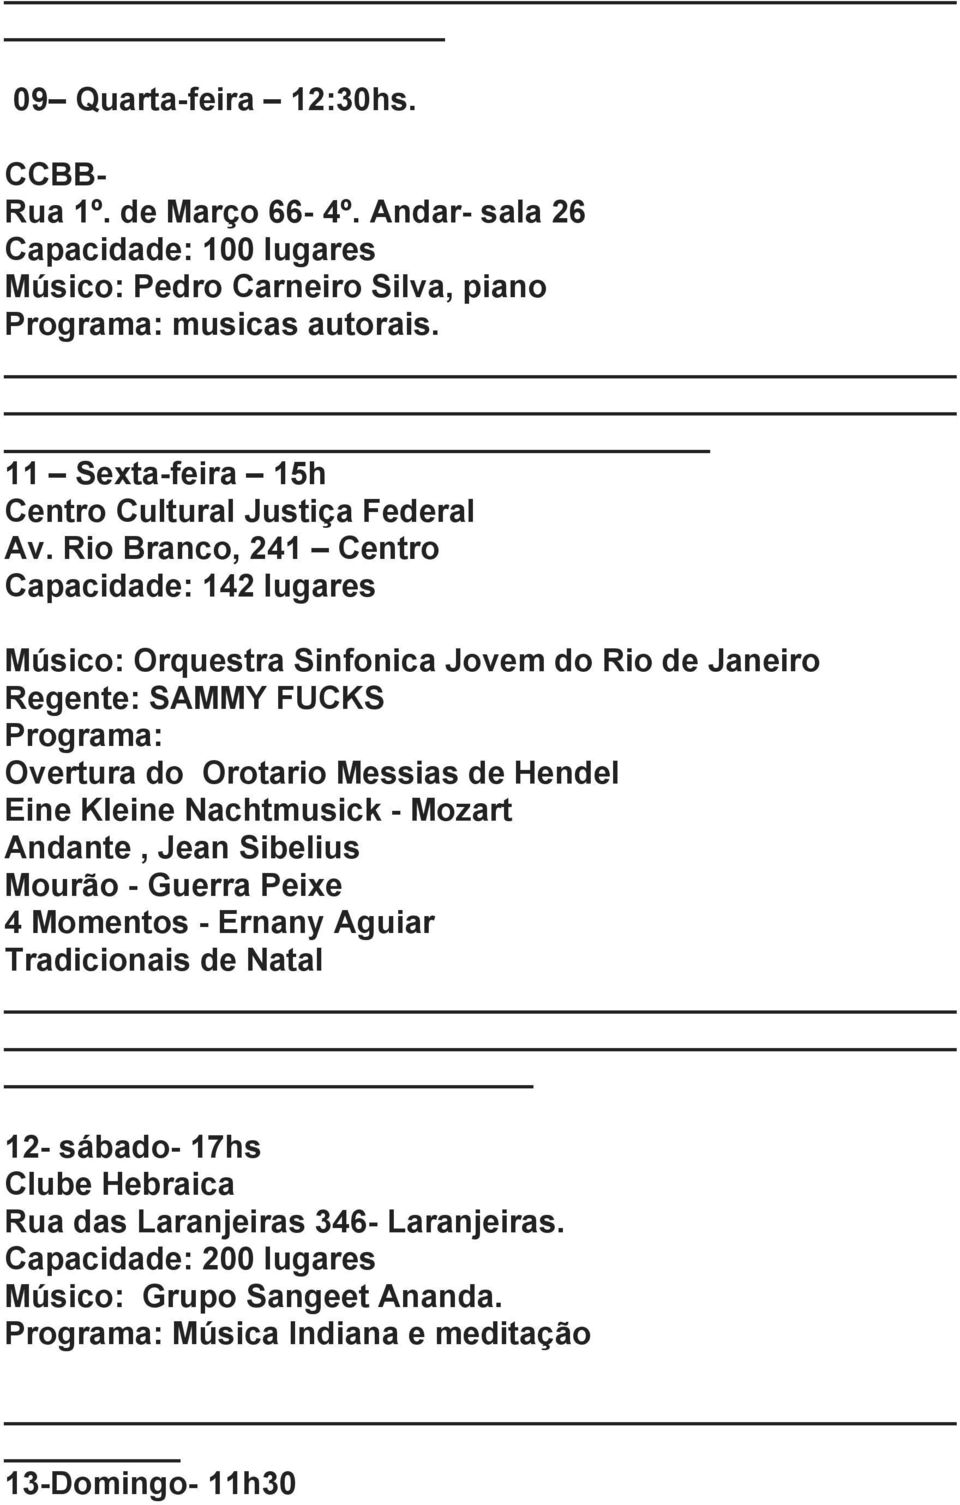 Rio Branco, 241 Centro Capacidade: 142 lugares Músico: Orquestra Sinfonica Jovem do Rio de Janeiro Regente: SAMMY FUCKS Programa: Overtura do Orotario Messias de Hendel